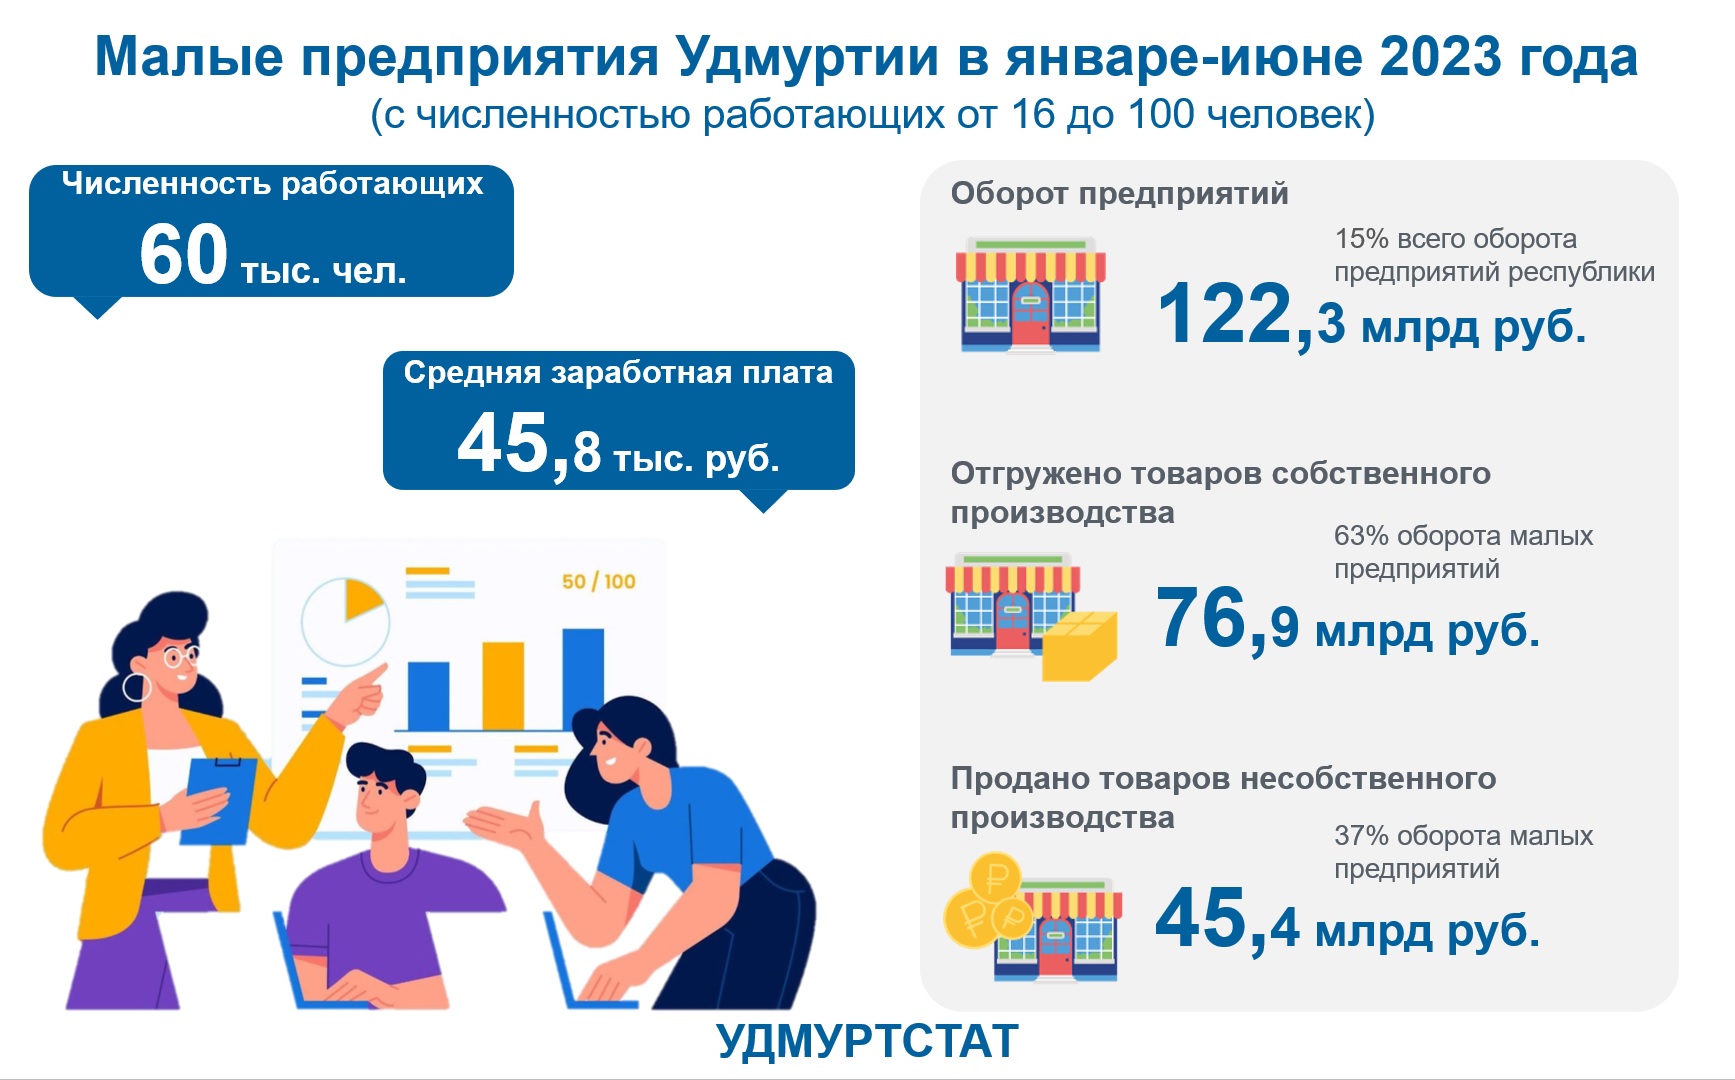 Малые предприятия Удмуртии январь-июнь 2023 года.